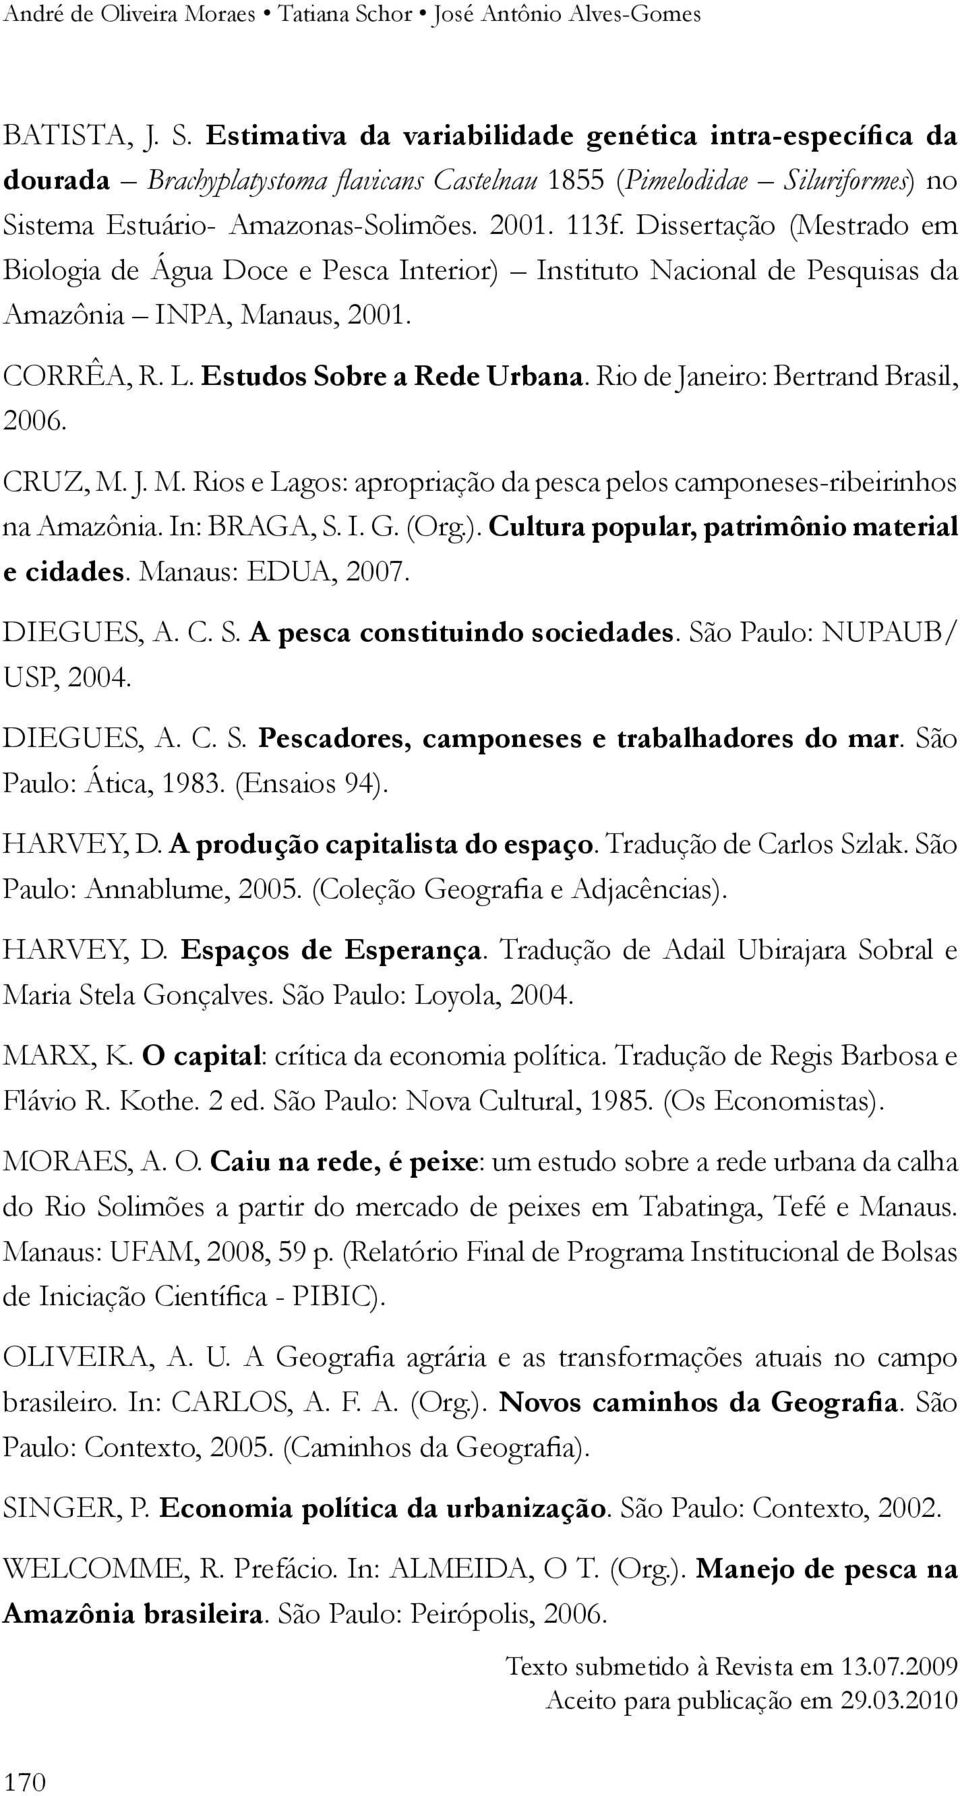 Rio de Janeiro: Bertrand Brasil, 2006. CRUZ, M. J. M. Rios e Lagos: apropriação da pesca pelos camponeses-ribeirinhos na Amazônia. In: BRAGA, S. I. G. (Org.).